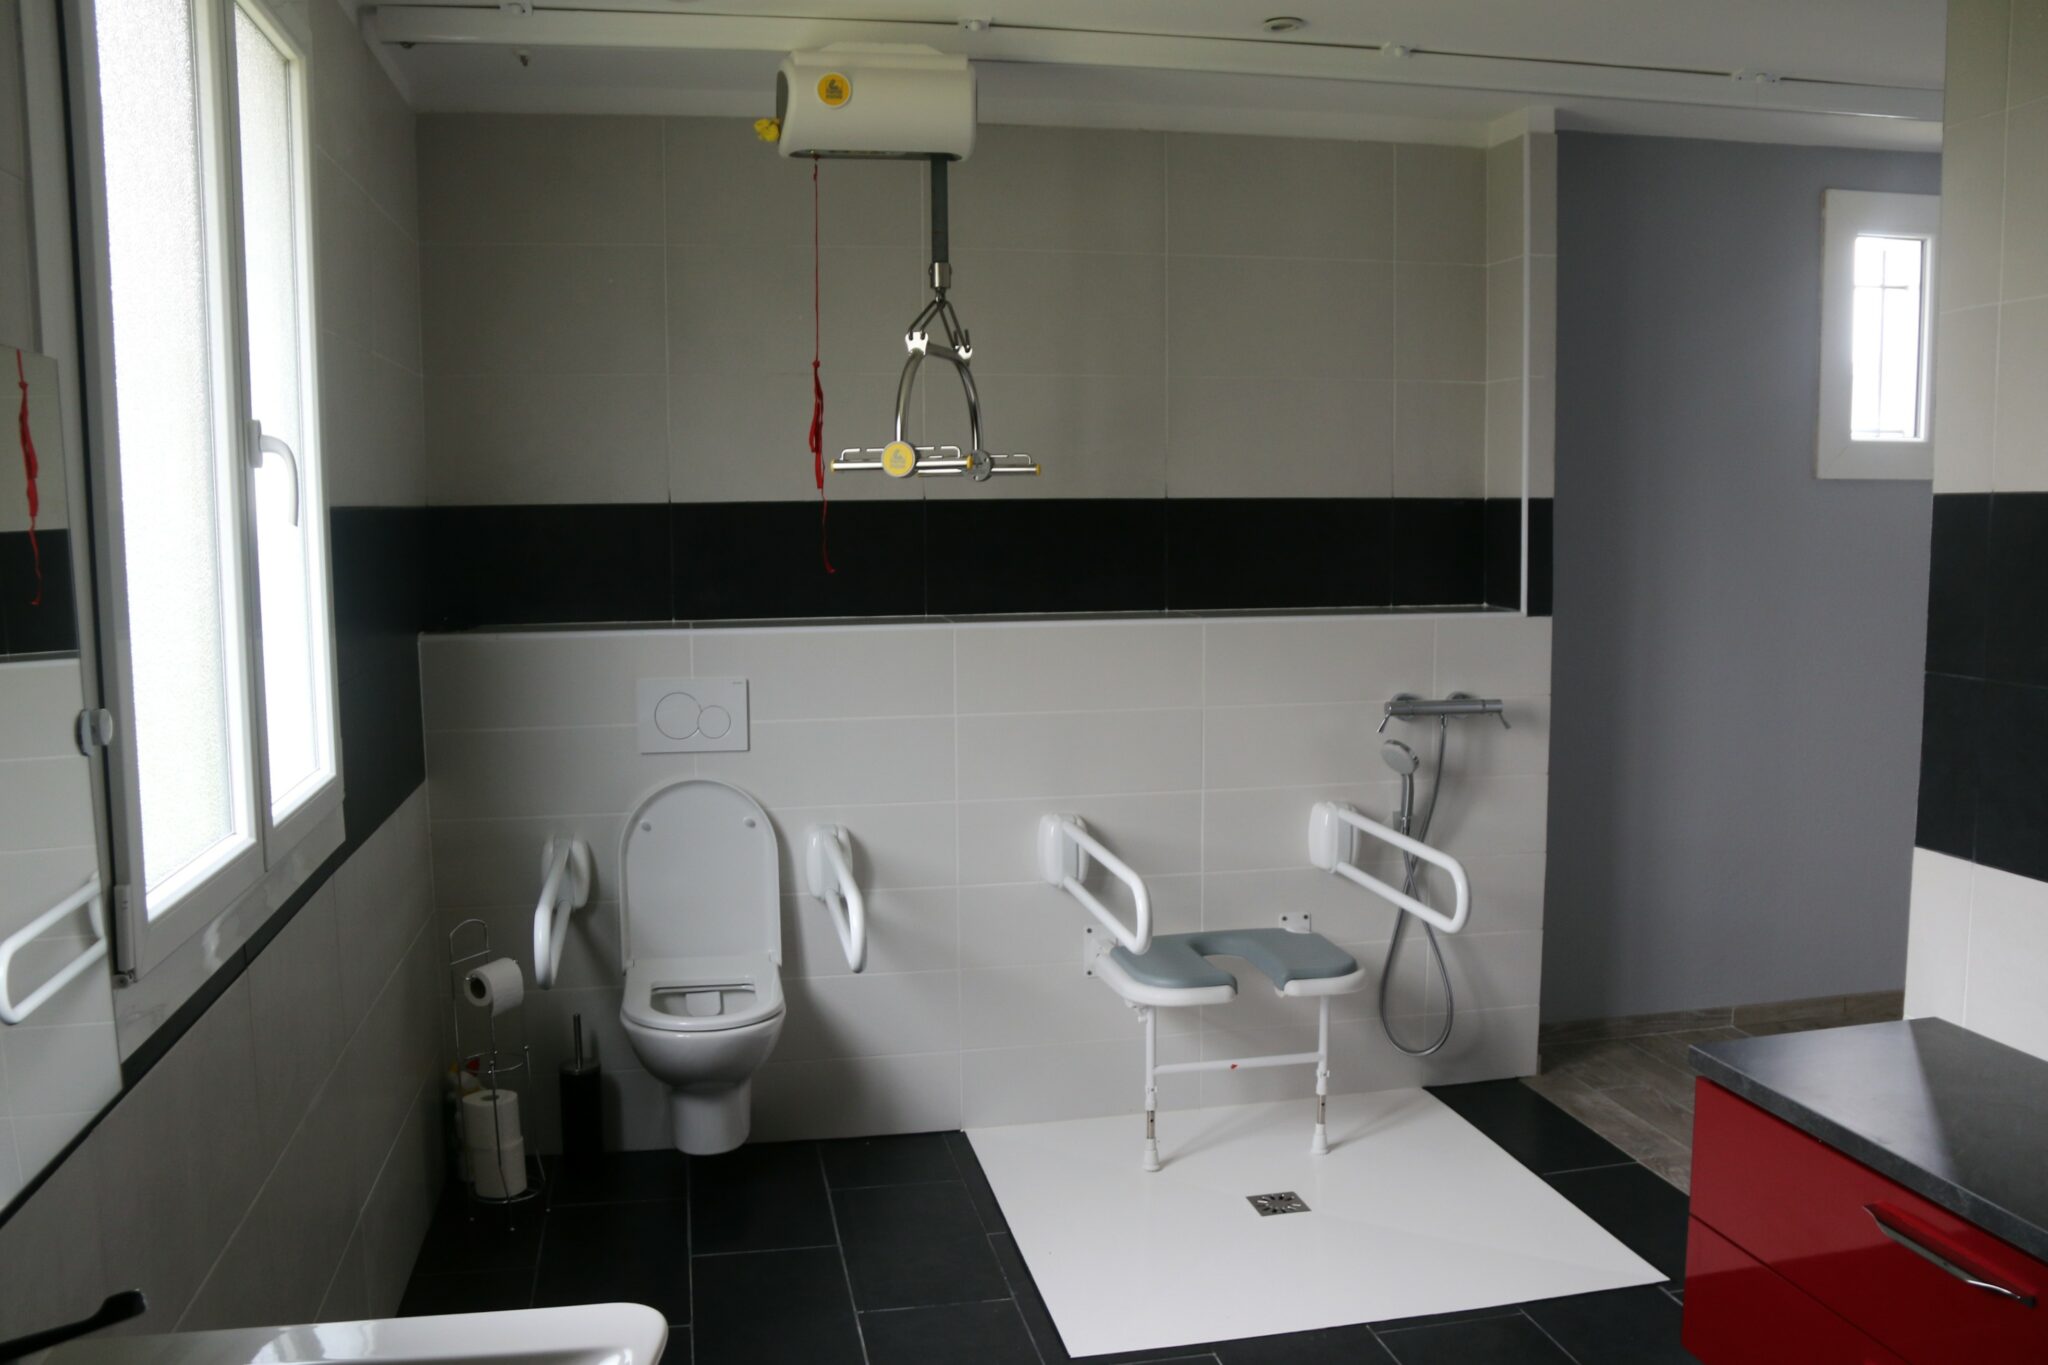 Salle de bain accessible avec rail de transfert au plafond et douche à l'italienne